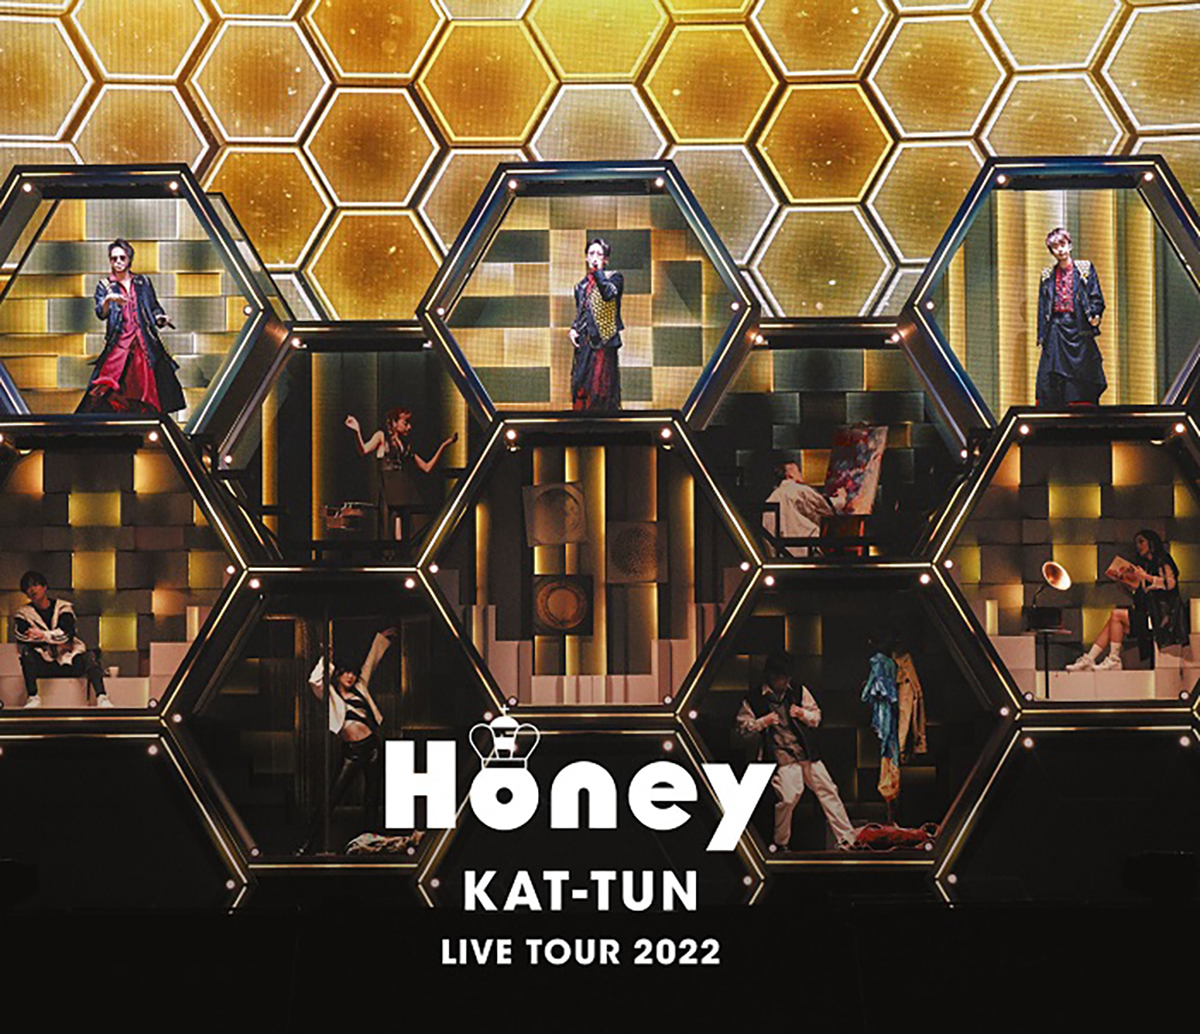 楽天ブックス: KAT-TUN LIVE TOUR 2022 Honey (通常盤Blu-ray)【Blu-ray】 KAT-TUN  4582515773243 DVD